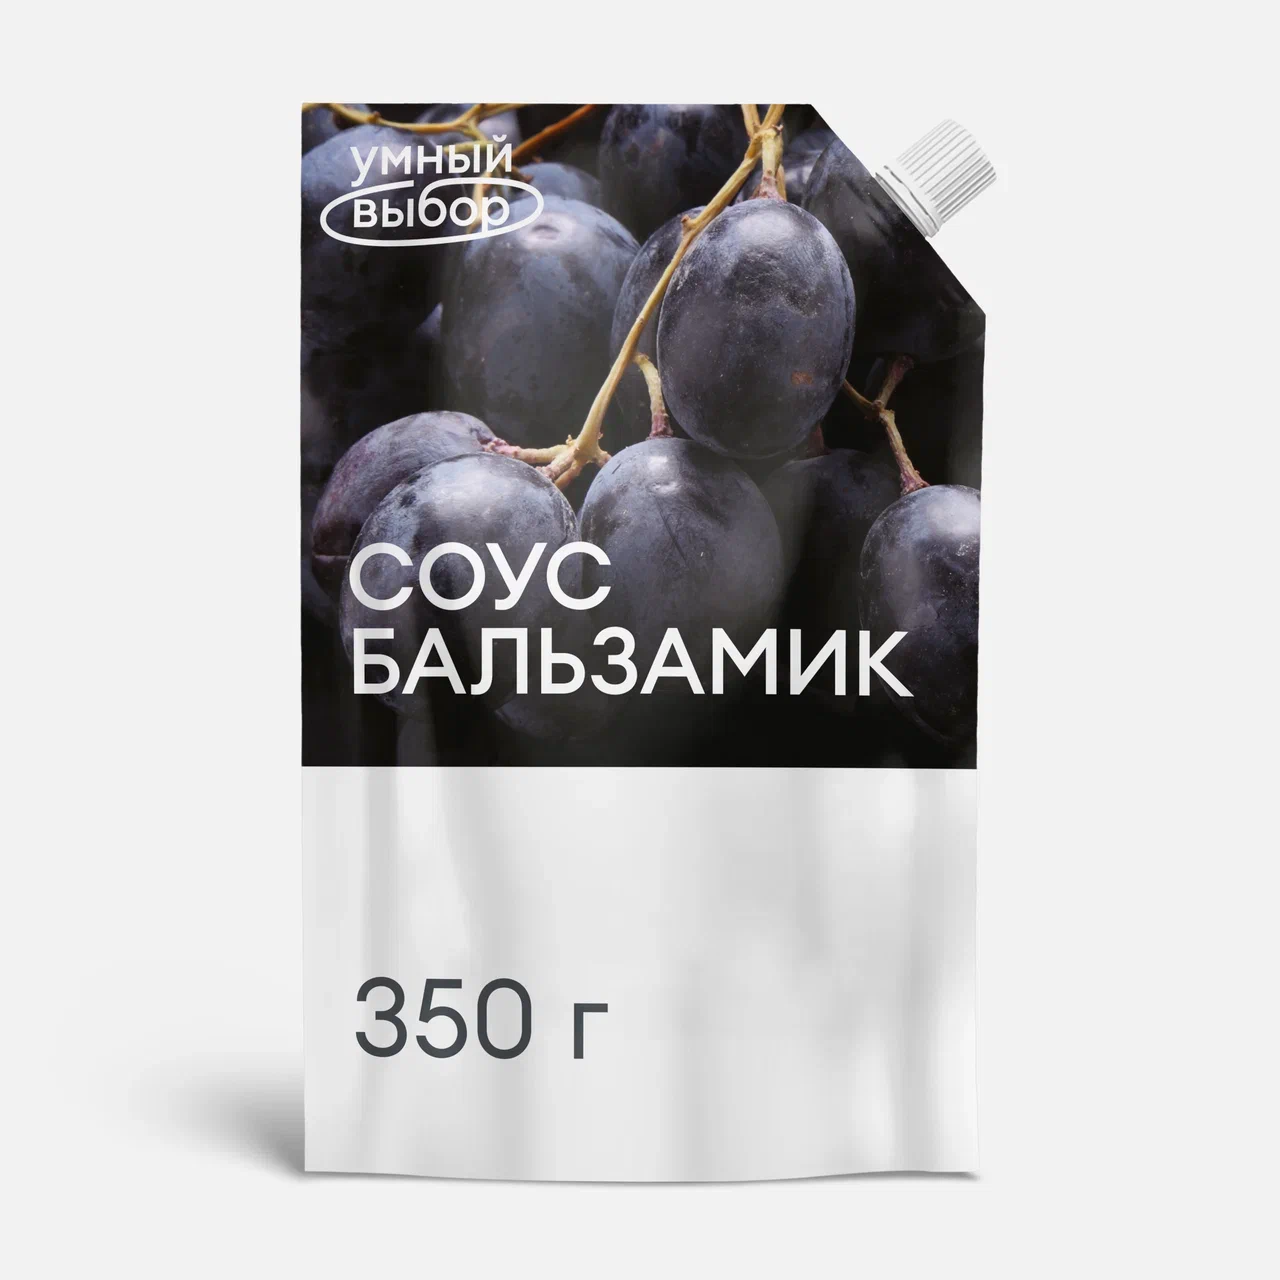 Соус Умный выбор бальзамик, 350 г – купить в Москве, цены в интернет-магазинах на Мегамаркет